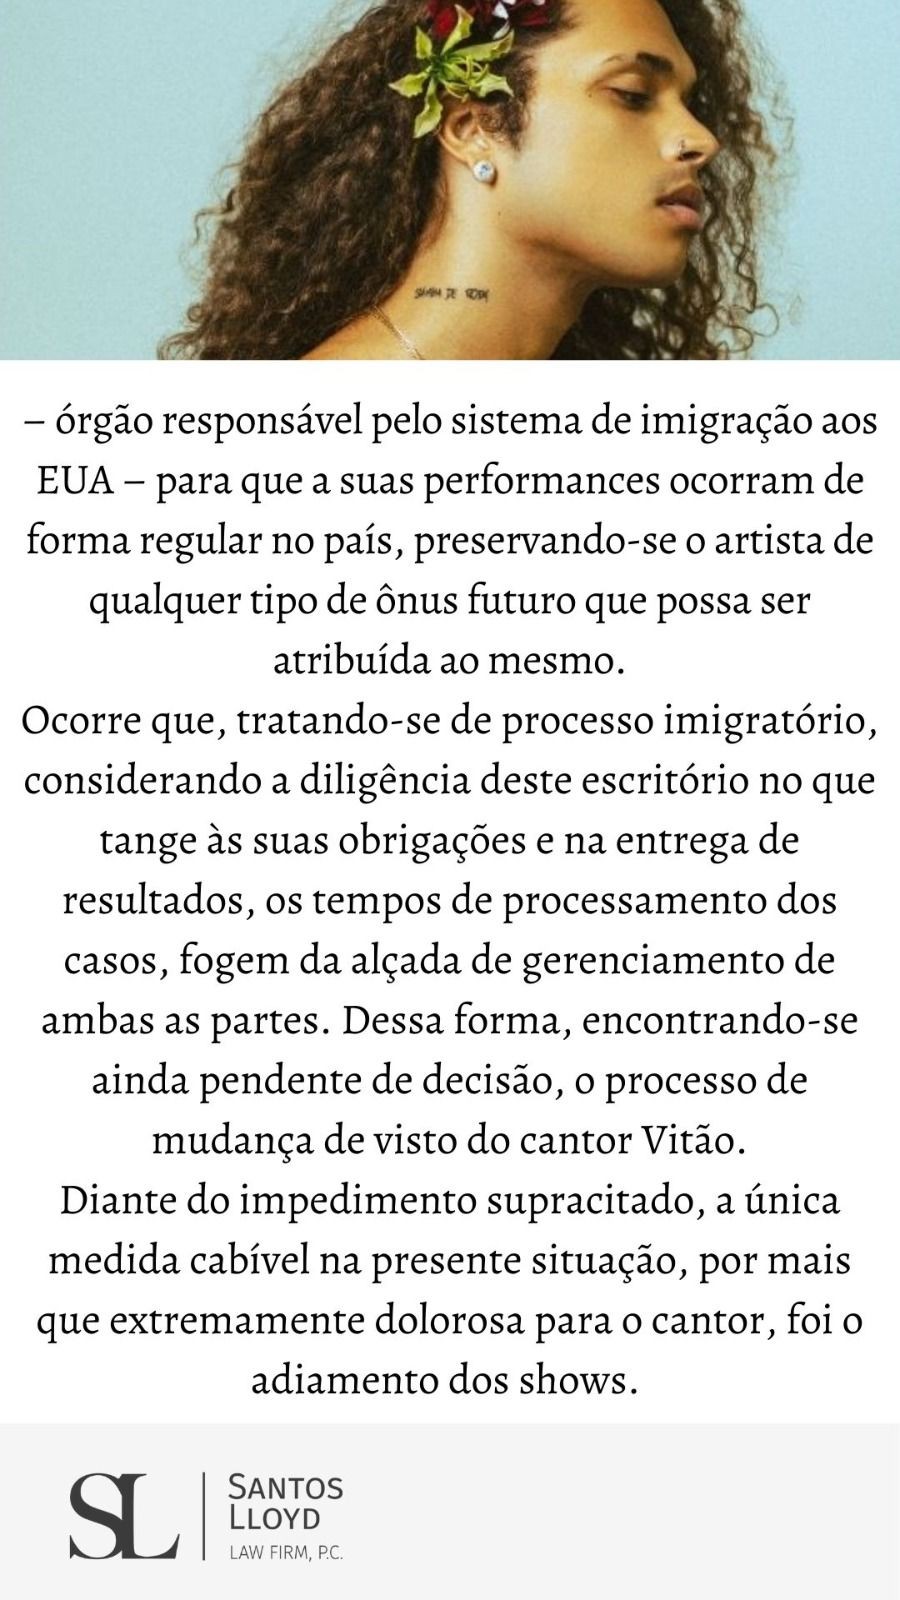 Assessoria de Vitão confirma adiamento de turnê nos EUA por falta de visto (Foto: Reprodução/Instagram)